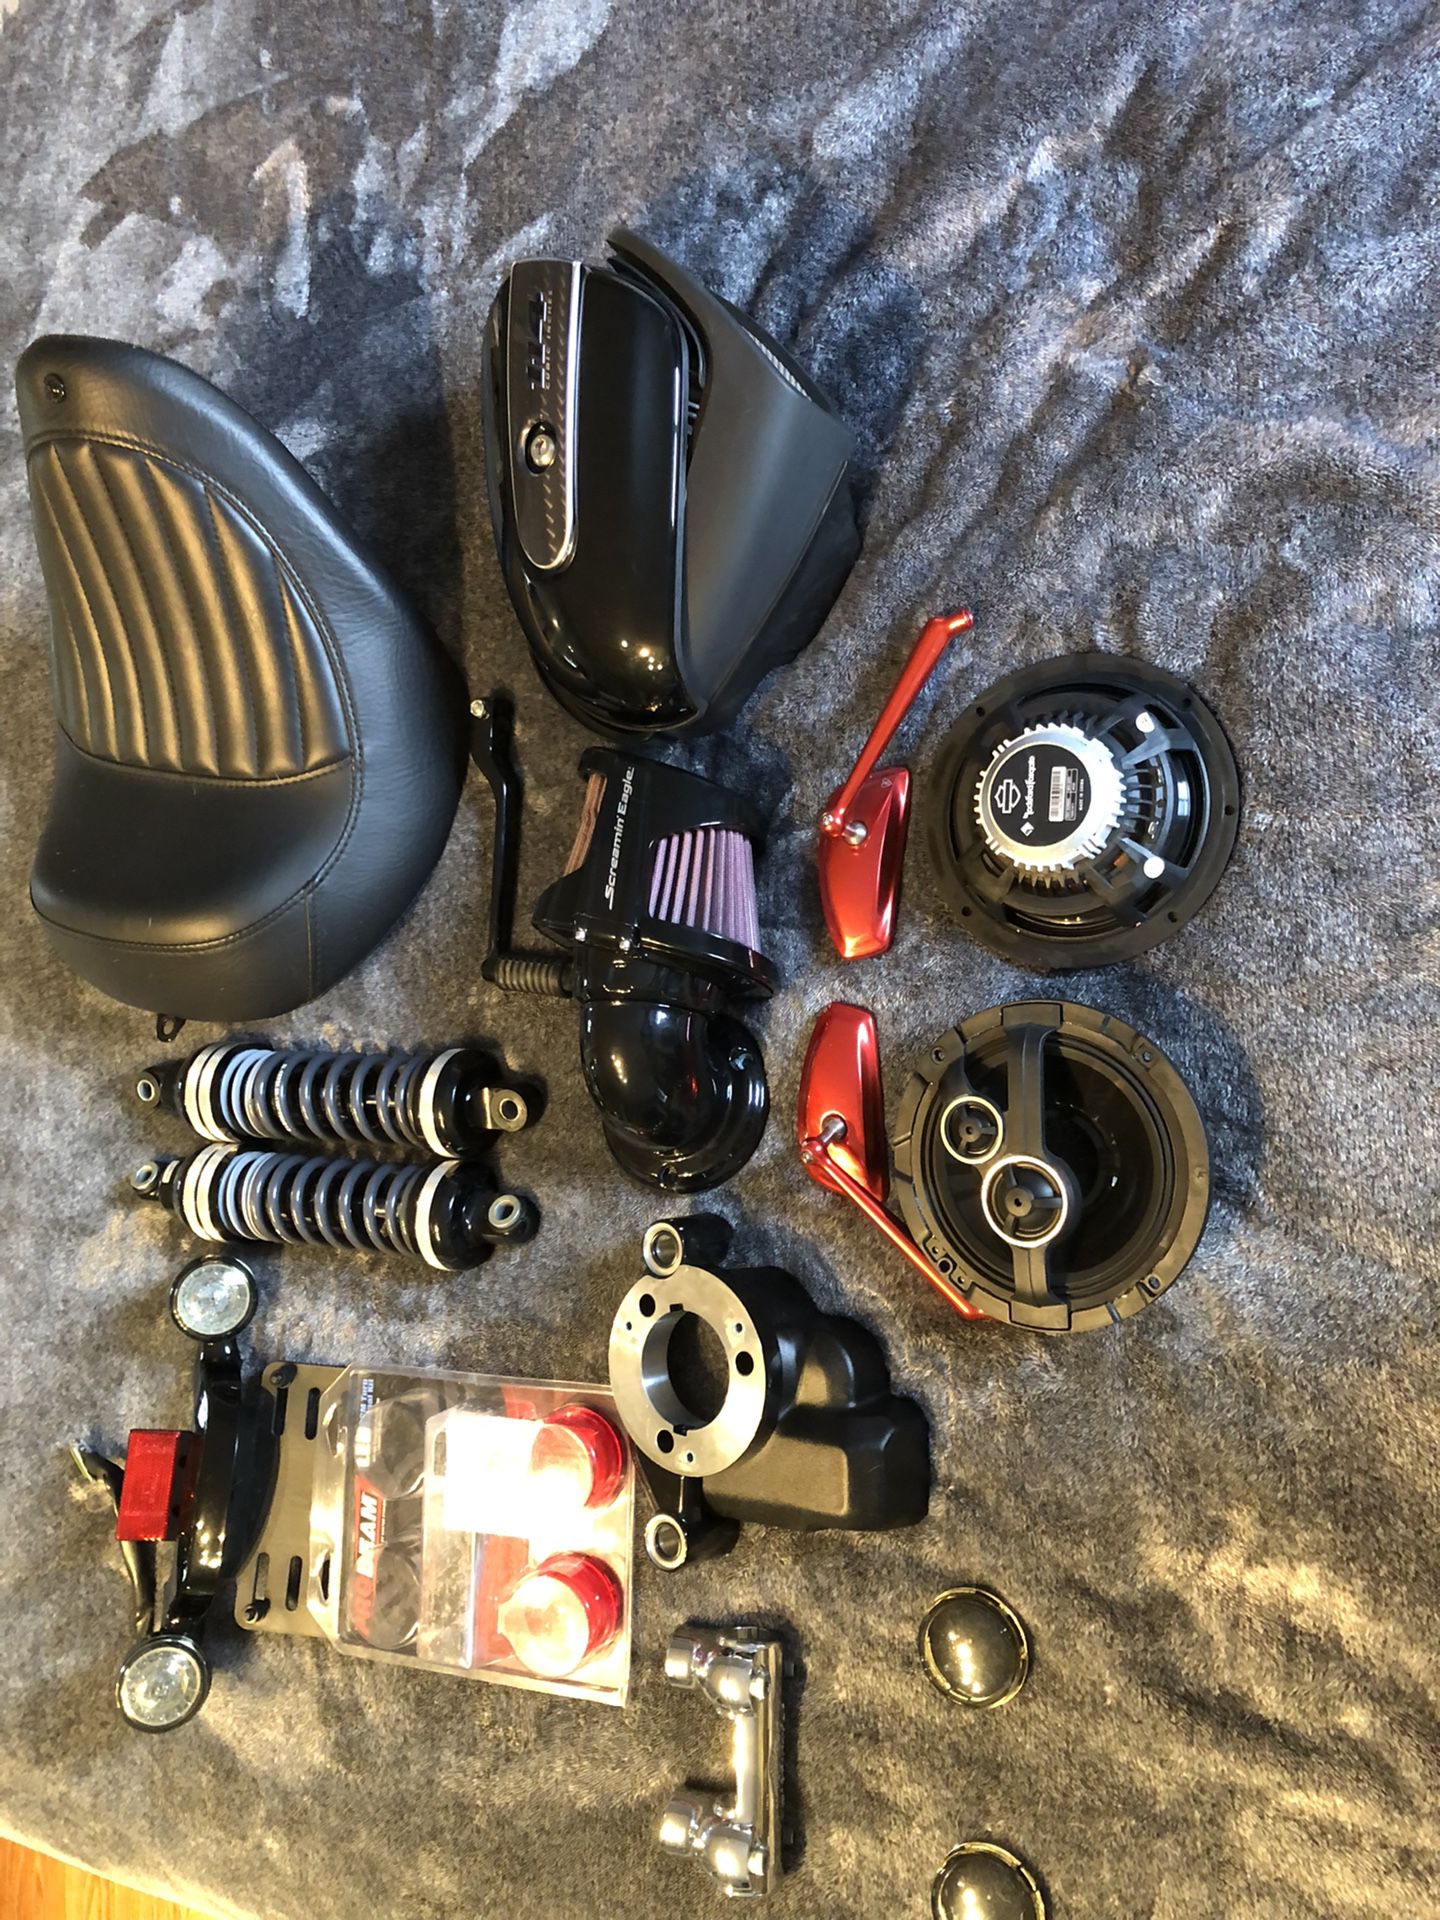 Various Harley Parts